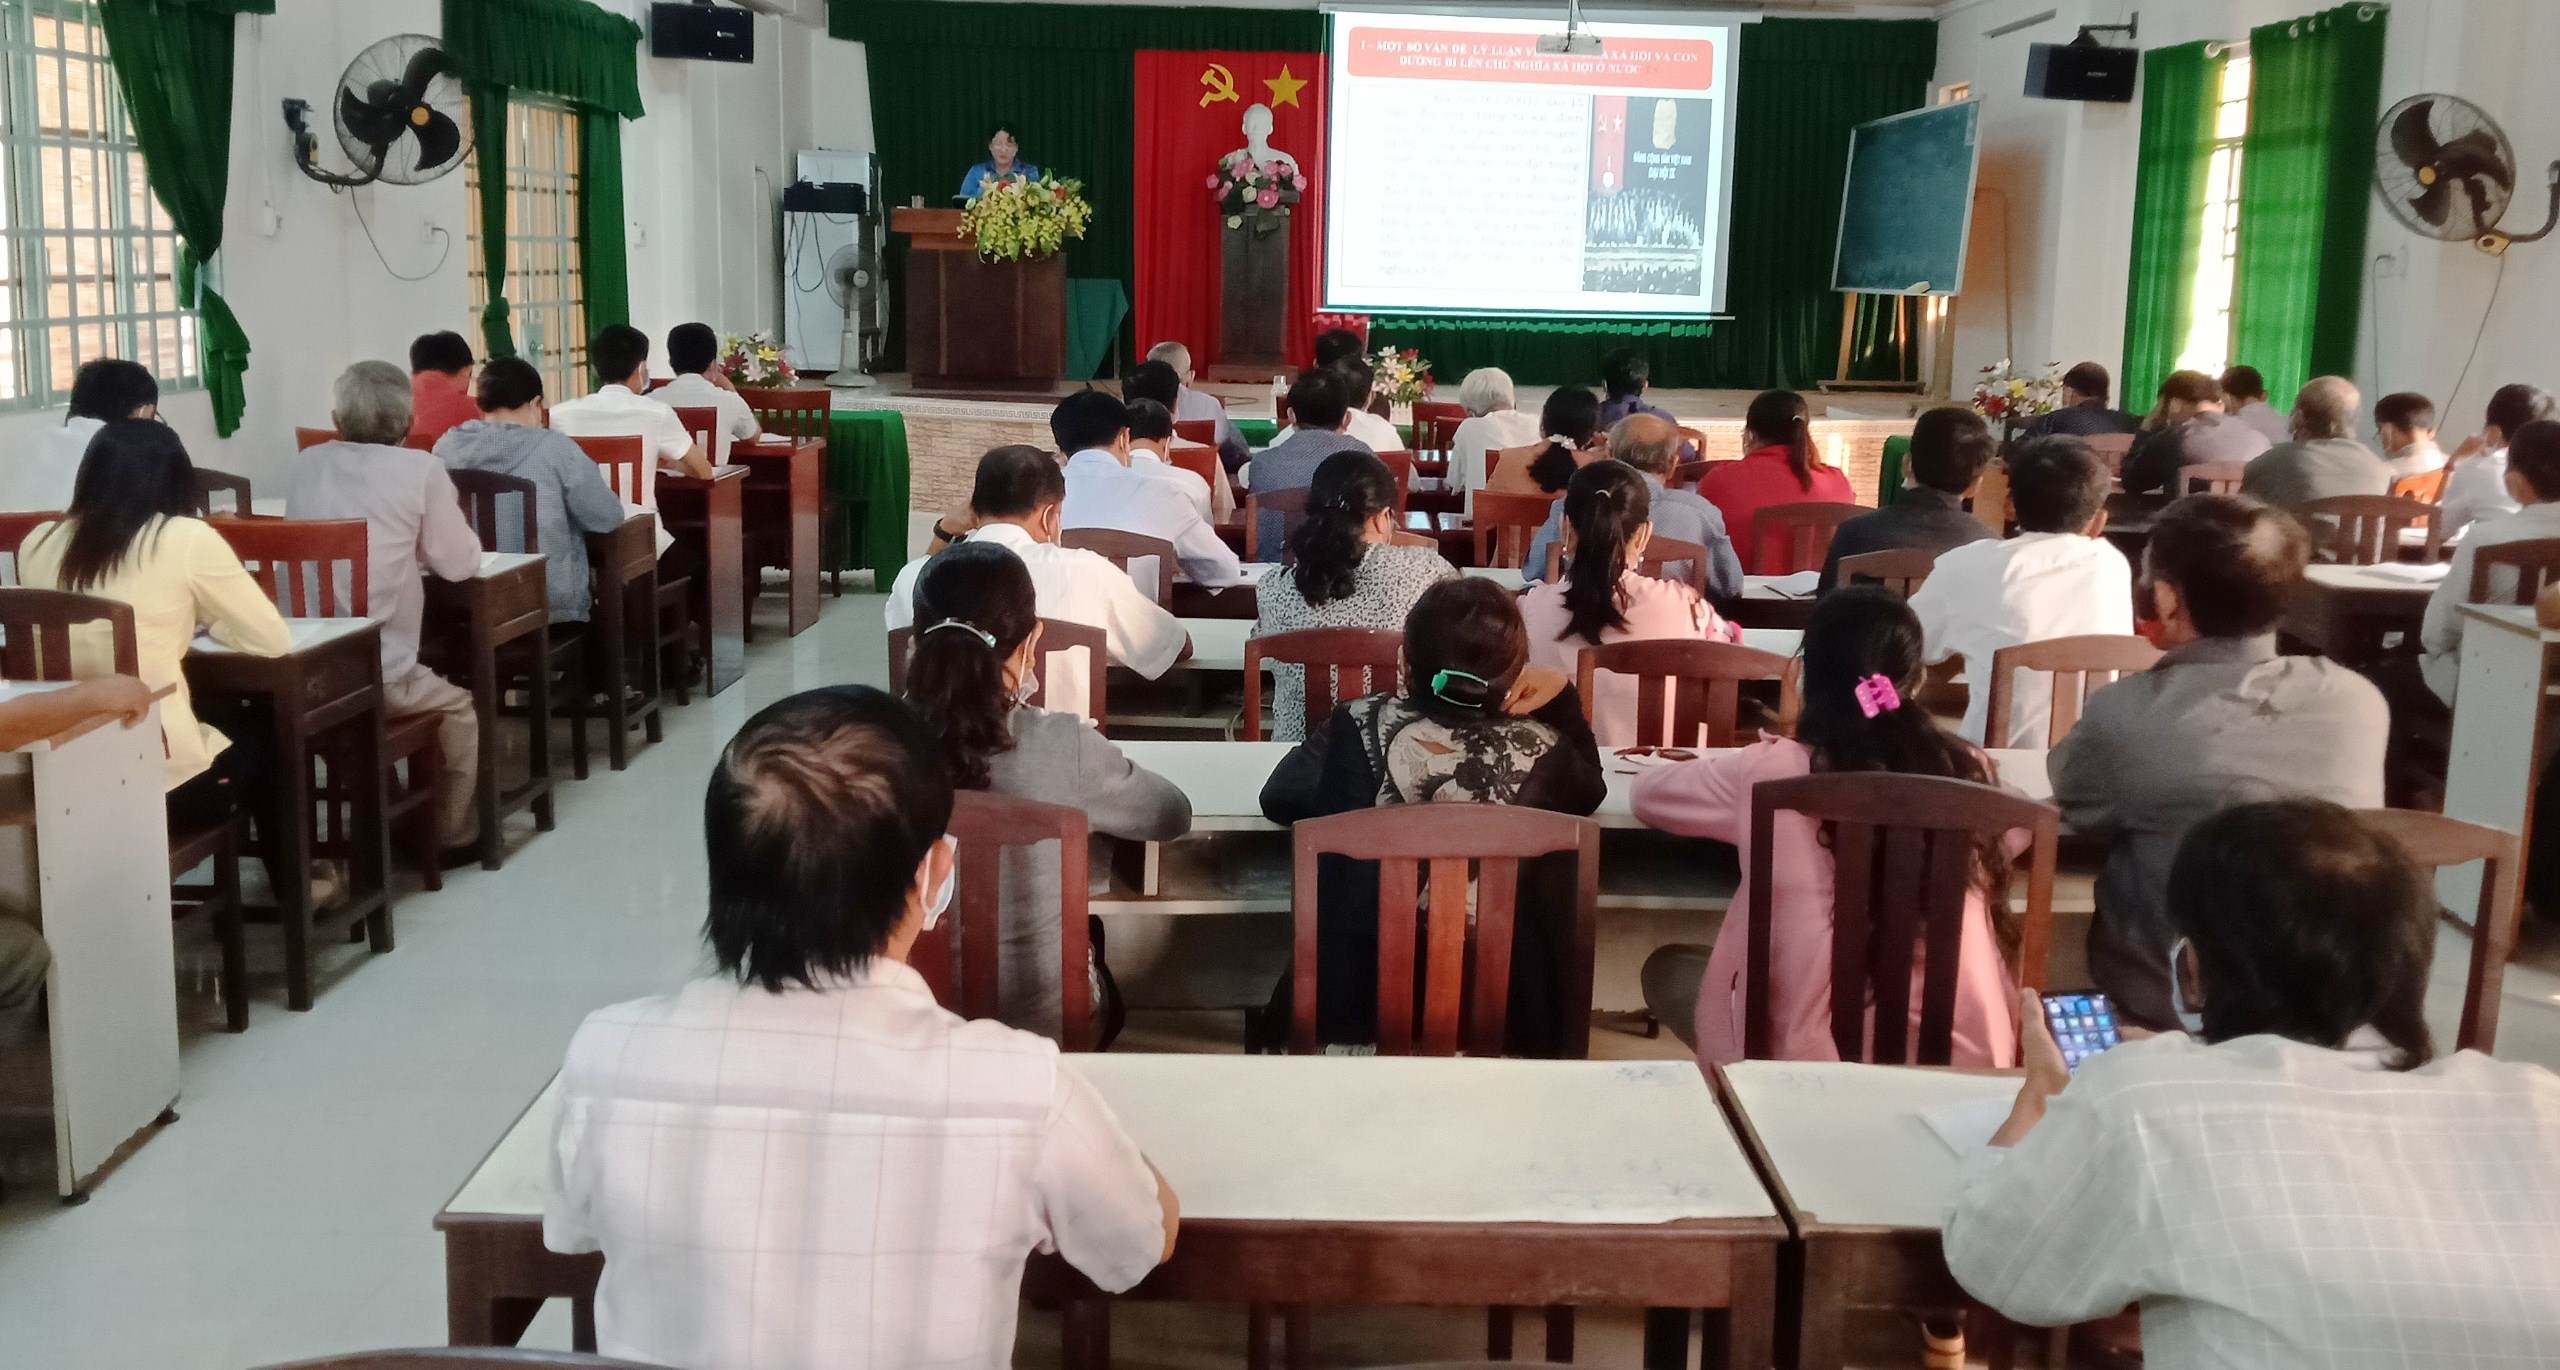 Huyện Dương Minh Châu: Tổ chức lớp Bồi dưỡng lý luận chính trị và nghiệp vụ dành cho cán bộ Hội Nông dân cơ sở năm 2021